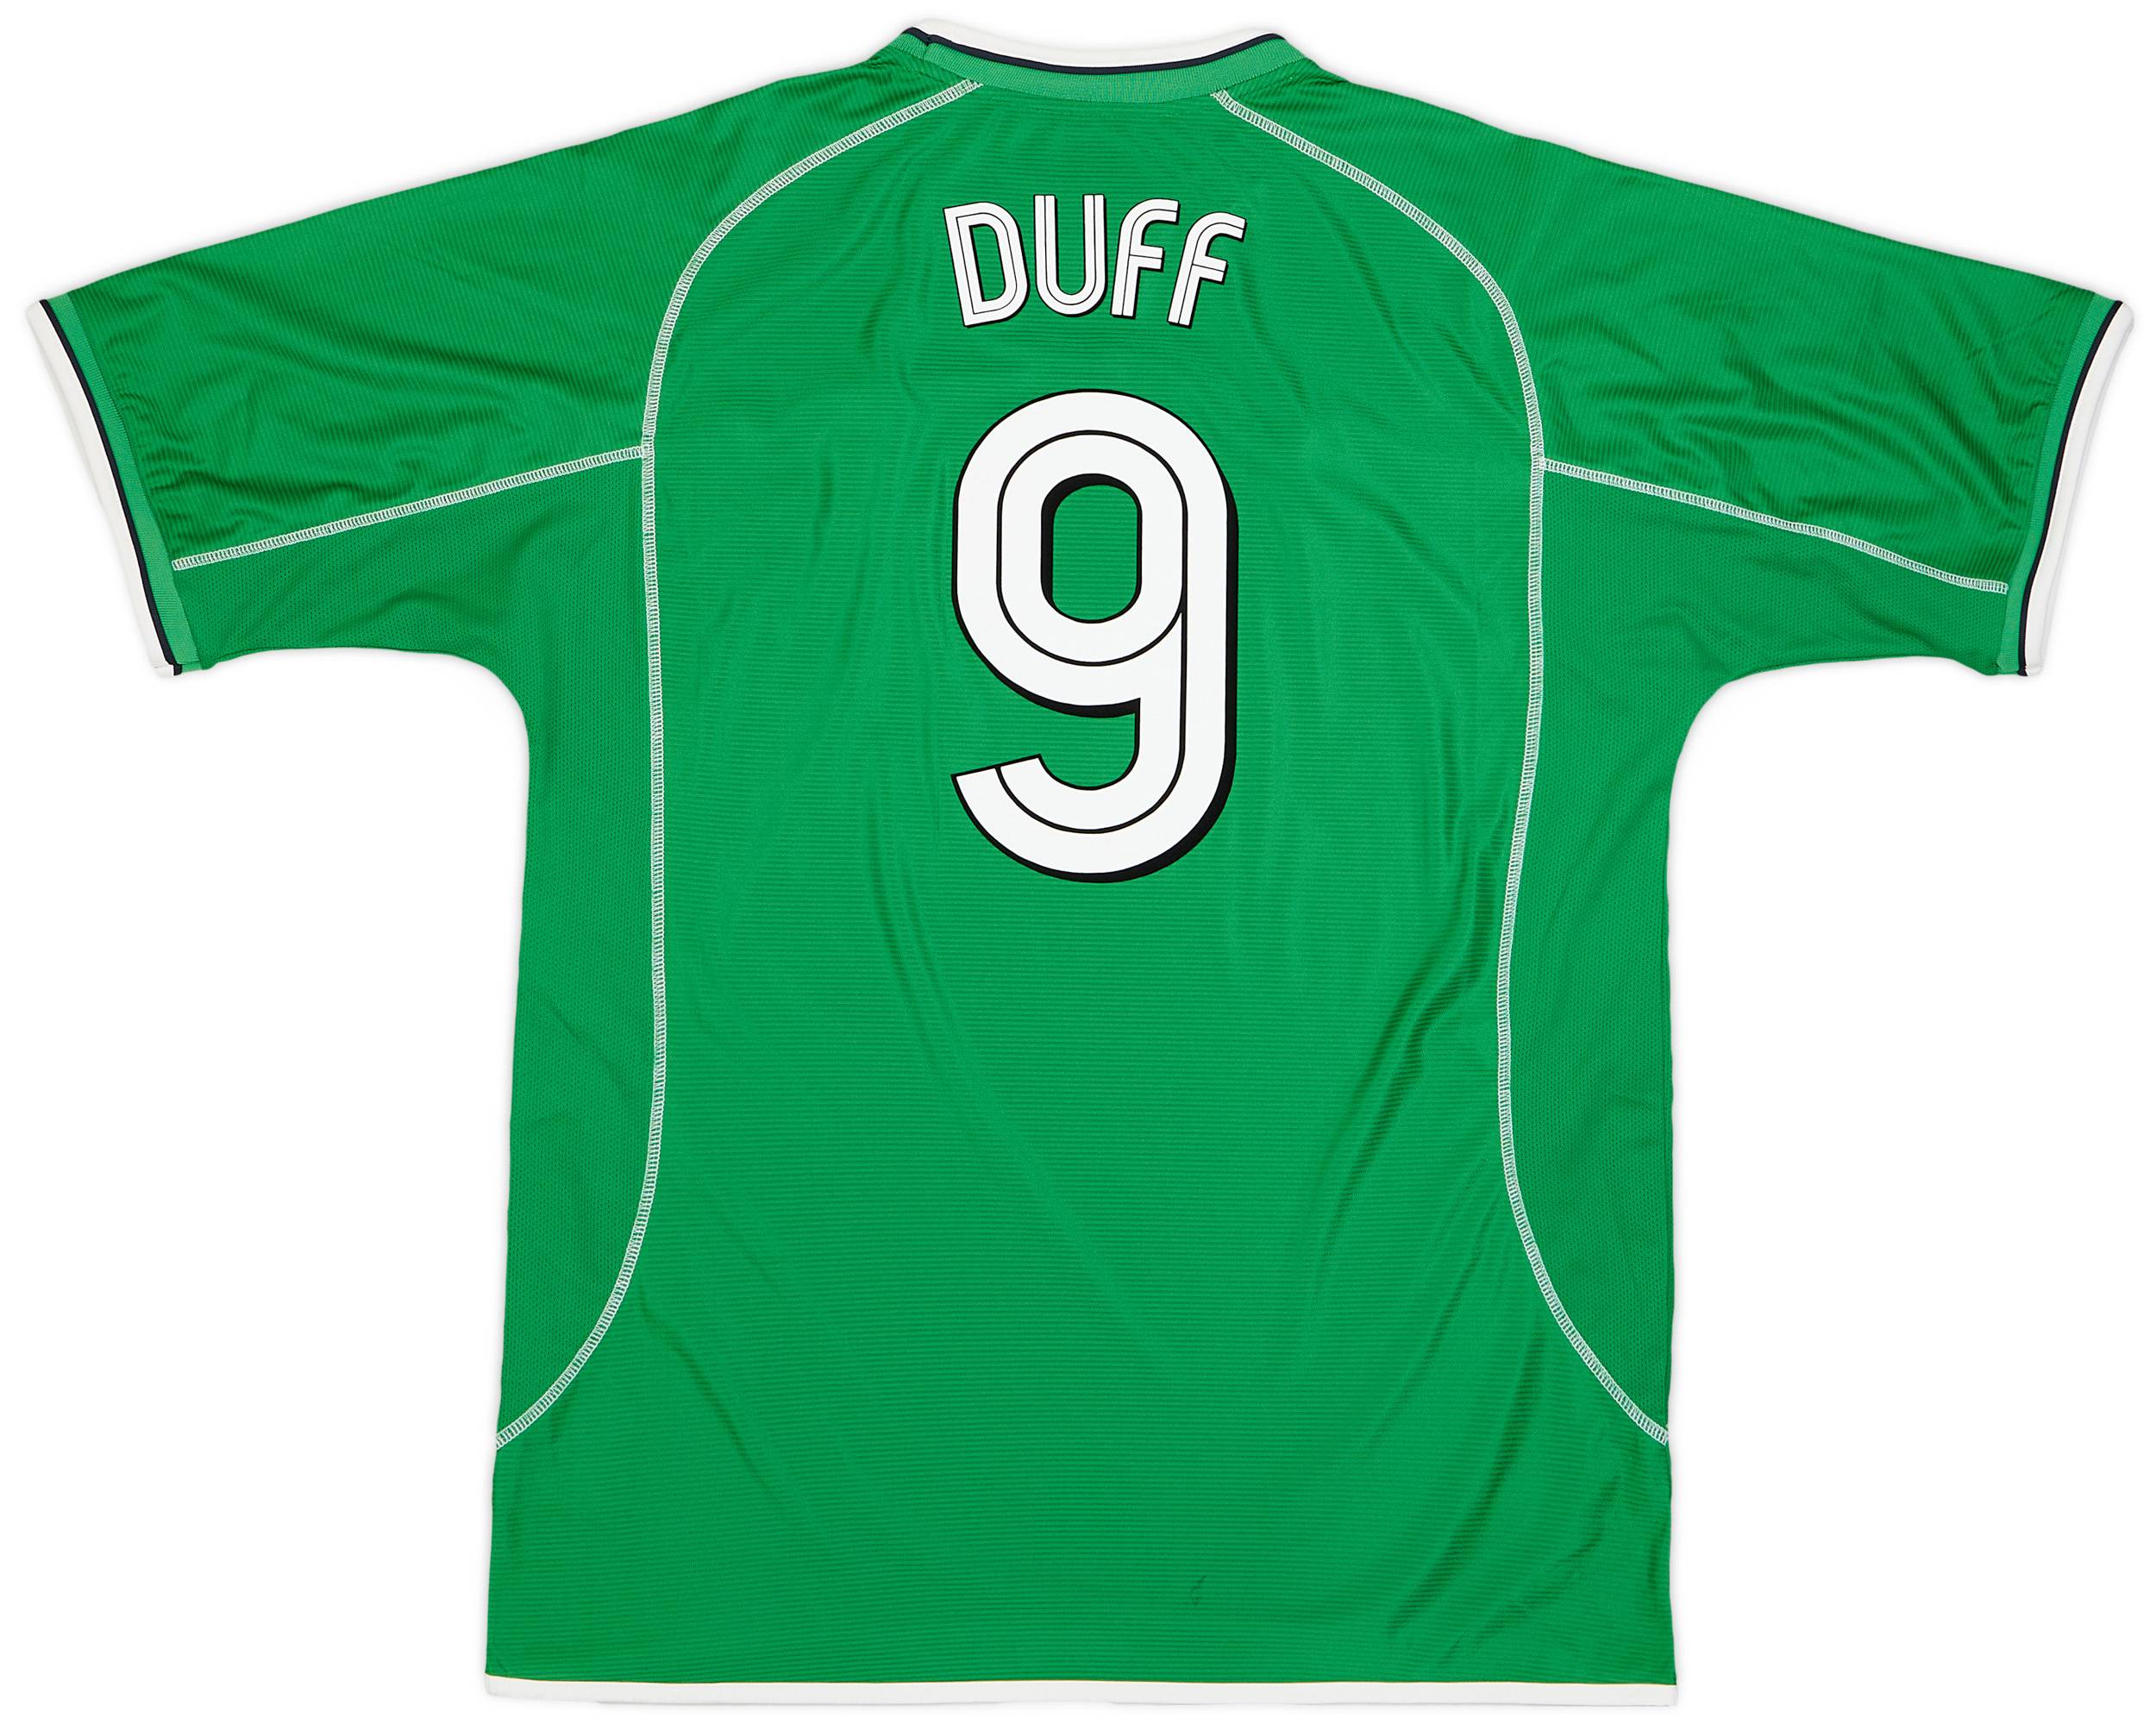 2001-03 Ireland Home Shirt Duff #9 - 9/10 - (XL)